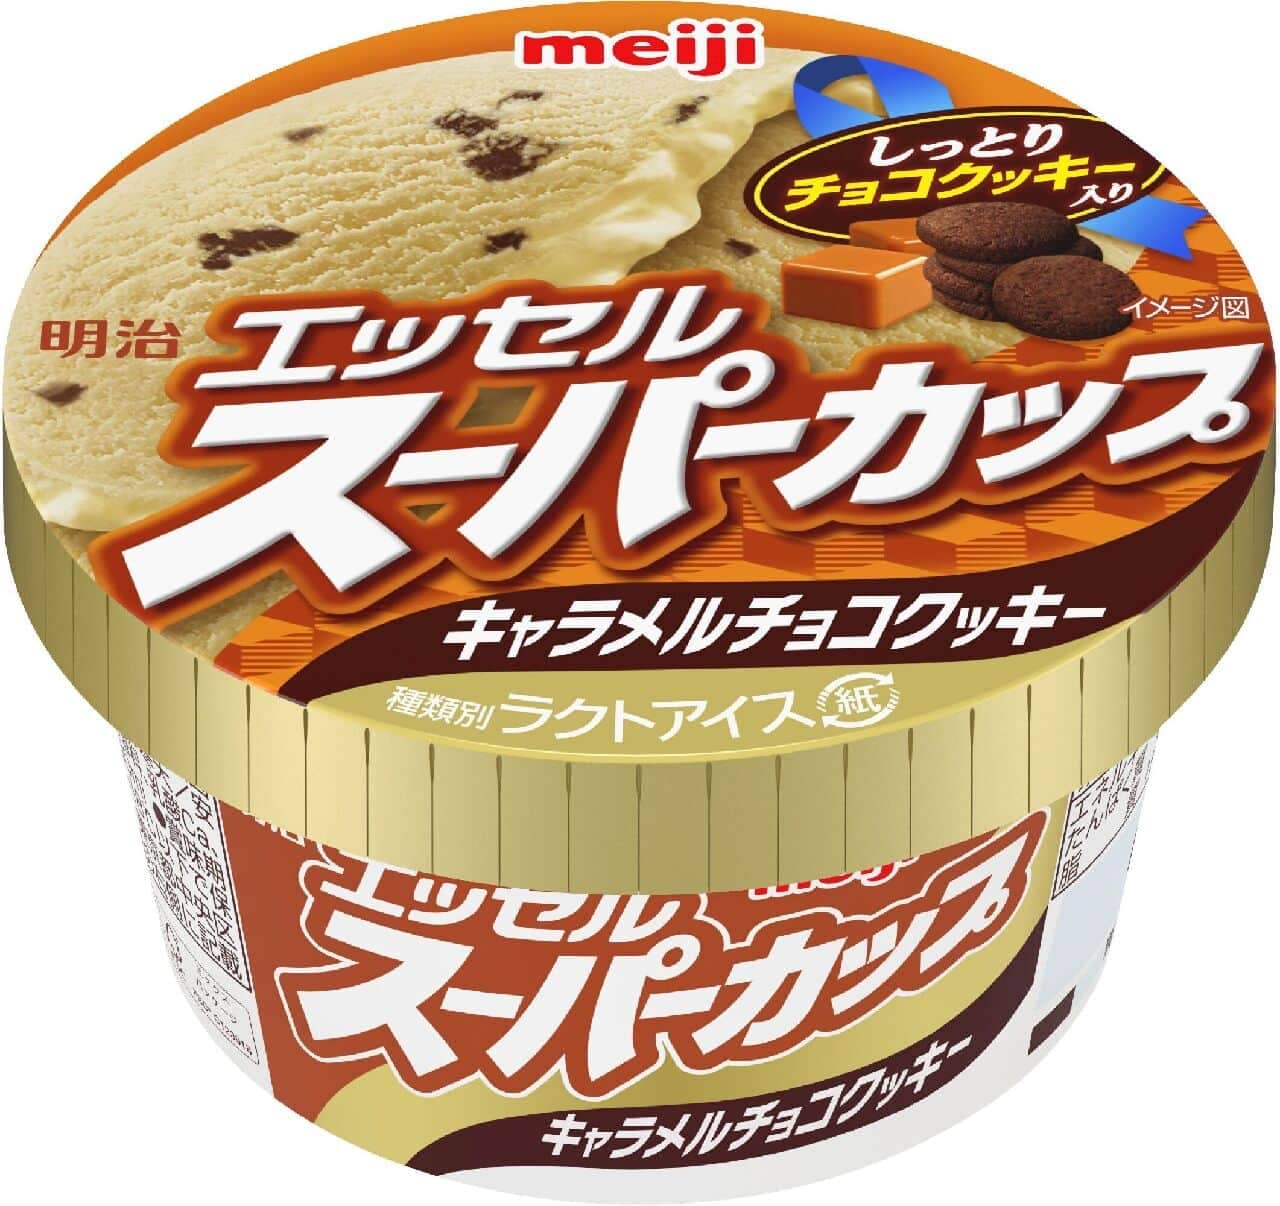 Meiji Essel Supercup Caramel Chocolate Cookie